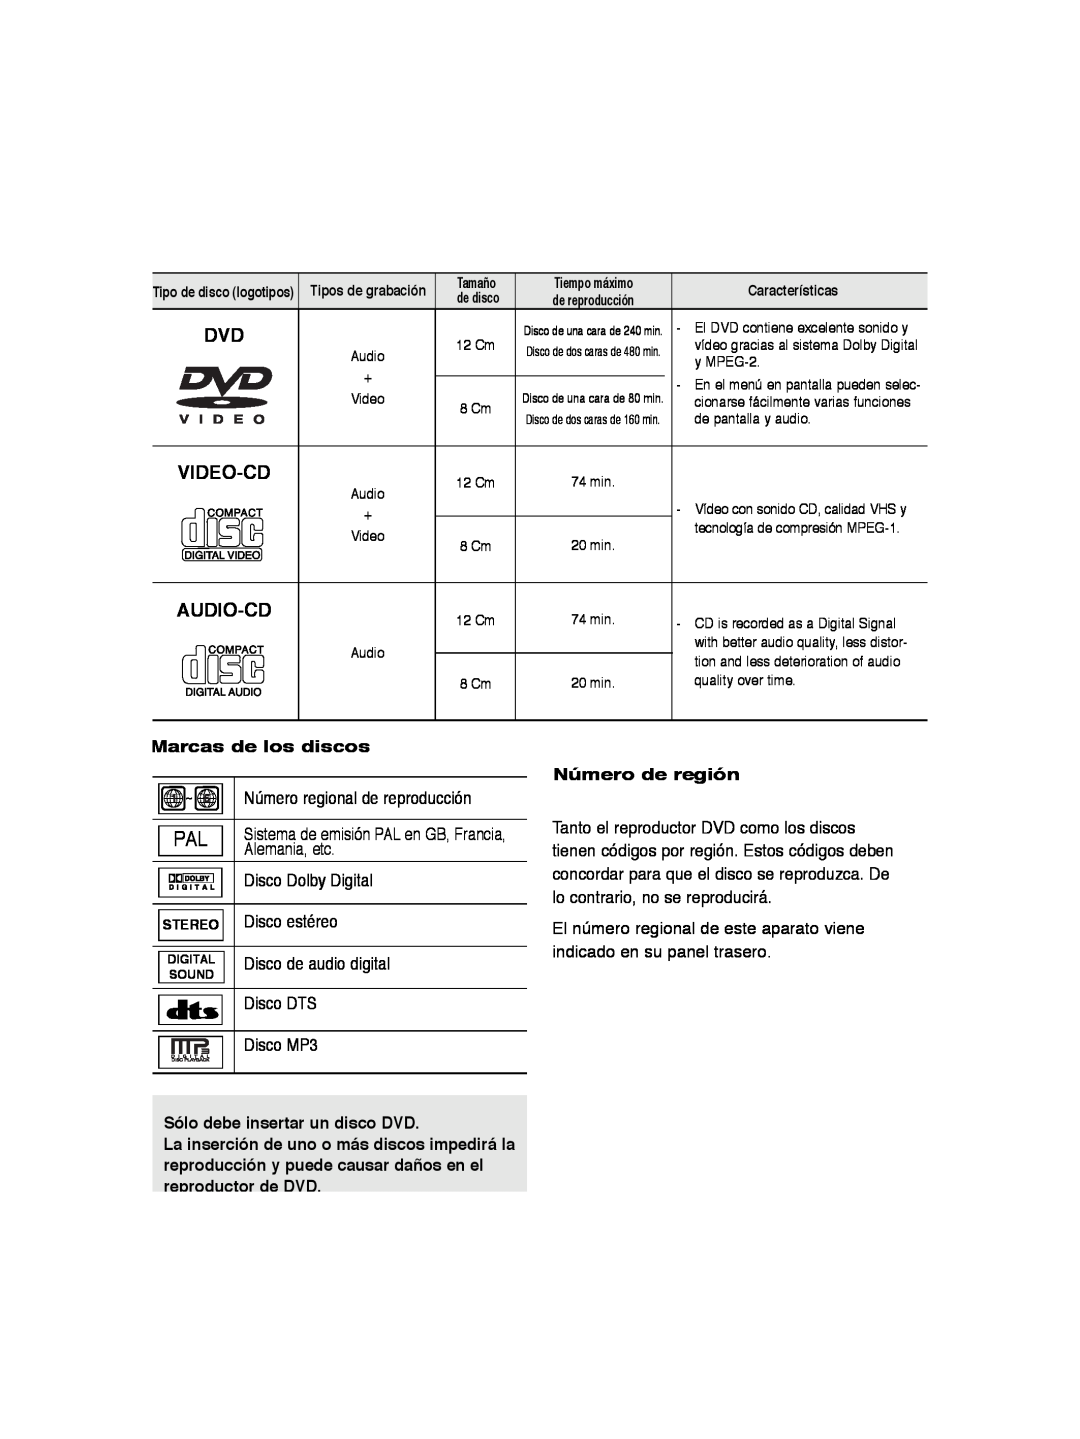 Samsung DVD-P260K/AFR Marcas de los discos Número de región, Sólo debe insertar un disco DVD, Video-Cd, Audio-Cd, Tamaño 